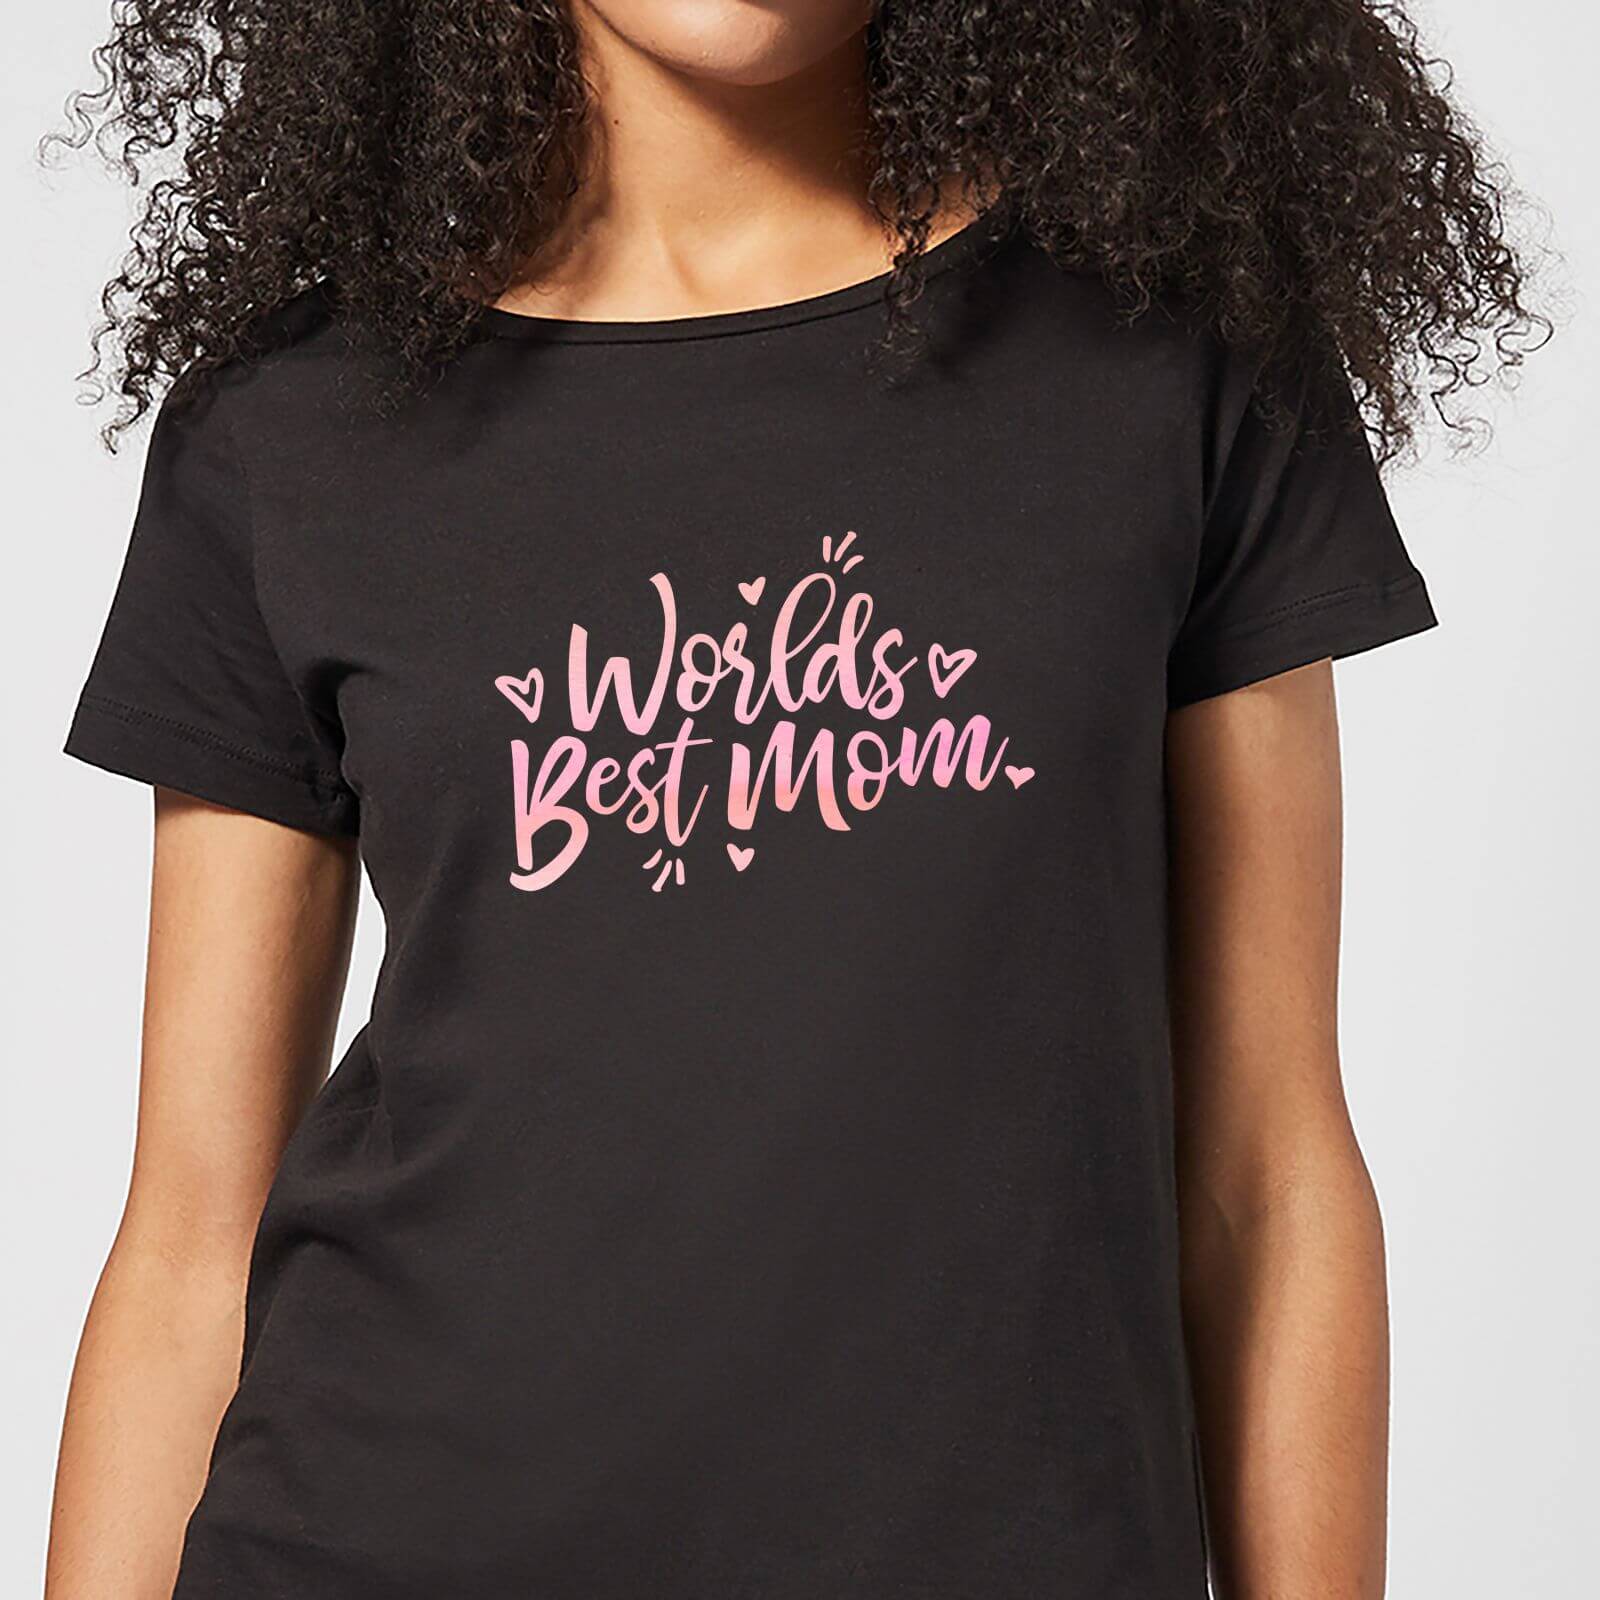 Worlds Best Mom Women's T-Shirt - Black - 5XL